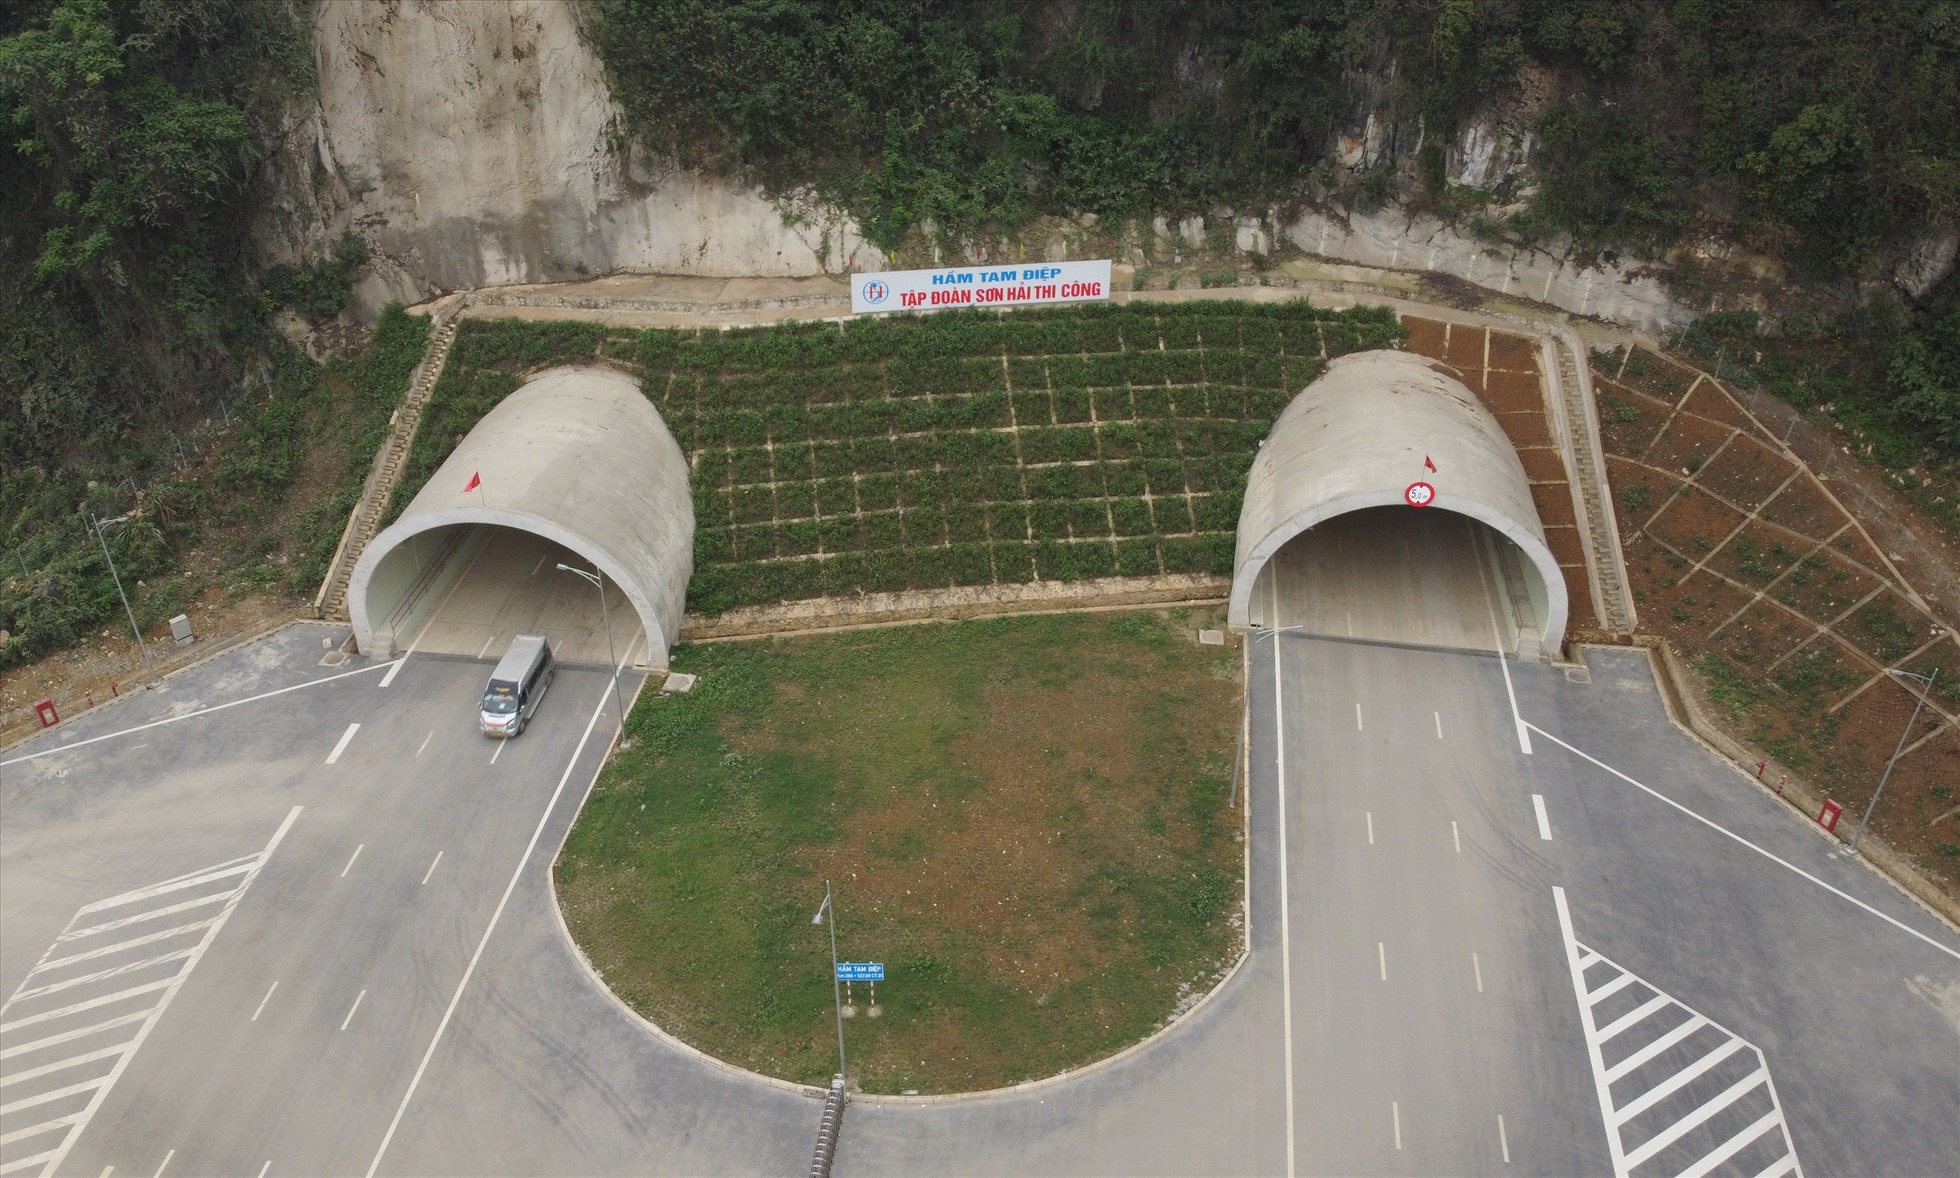 Khu vực hầm Tam Điệp, nơi tiếp giáp giữa tỉnh Ninh Bình và tỉnh Thanh Hóa. Ảnh: Quách Du